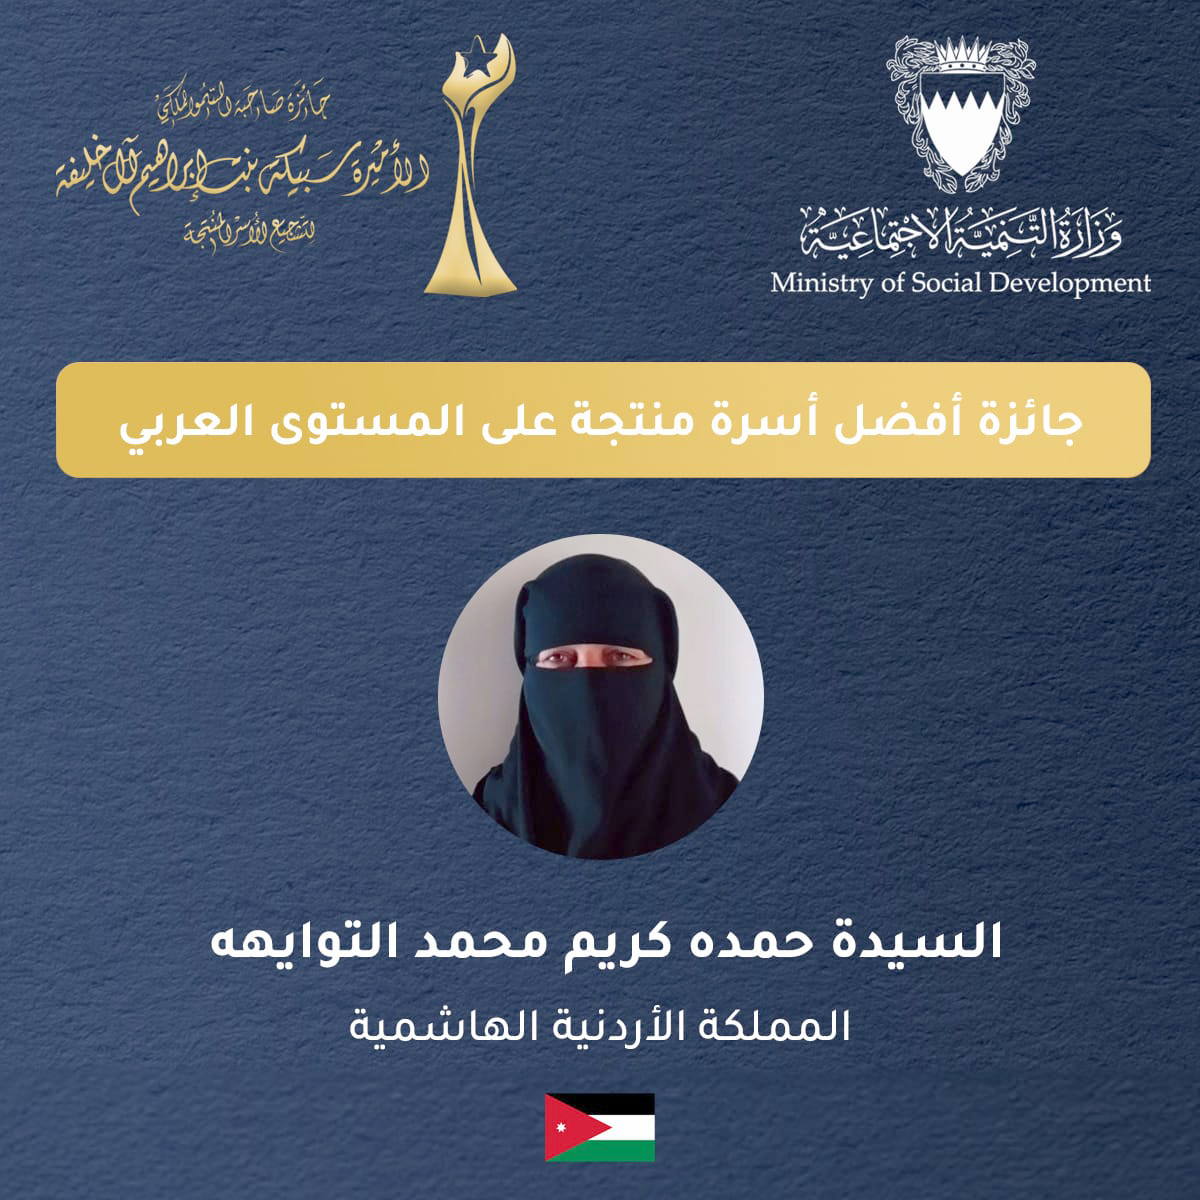 سيدة أردنية تفوز بالمركز الأول في جائزة  لتشجيع الأسر المنتجة عربيًا